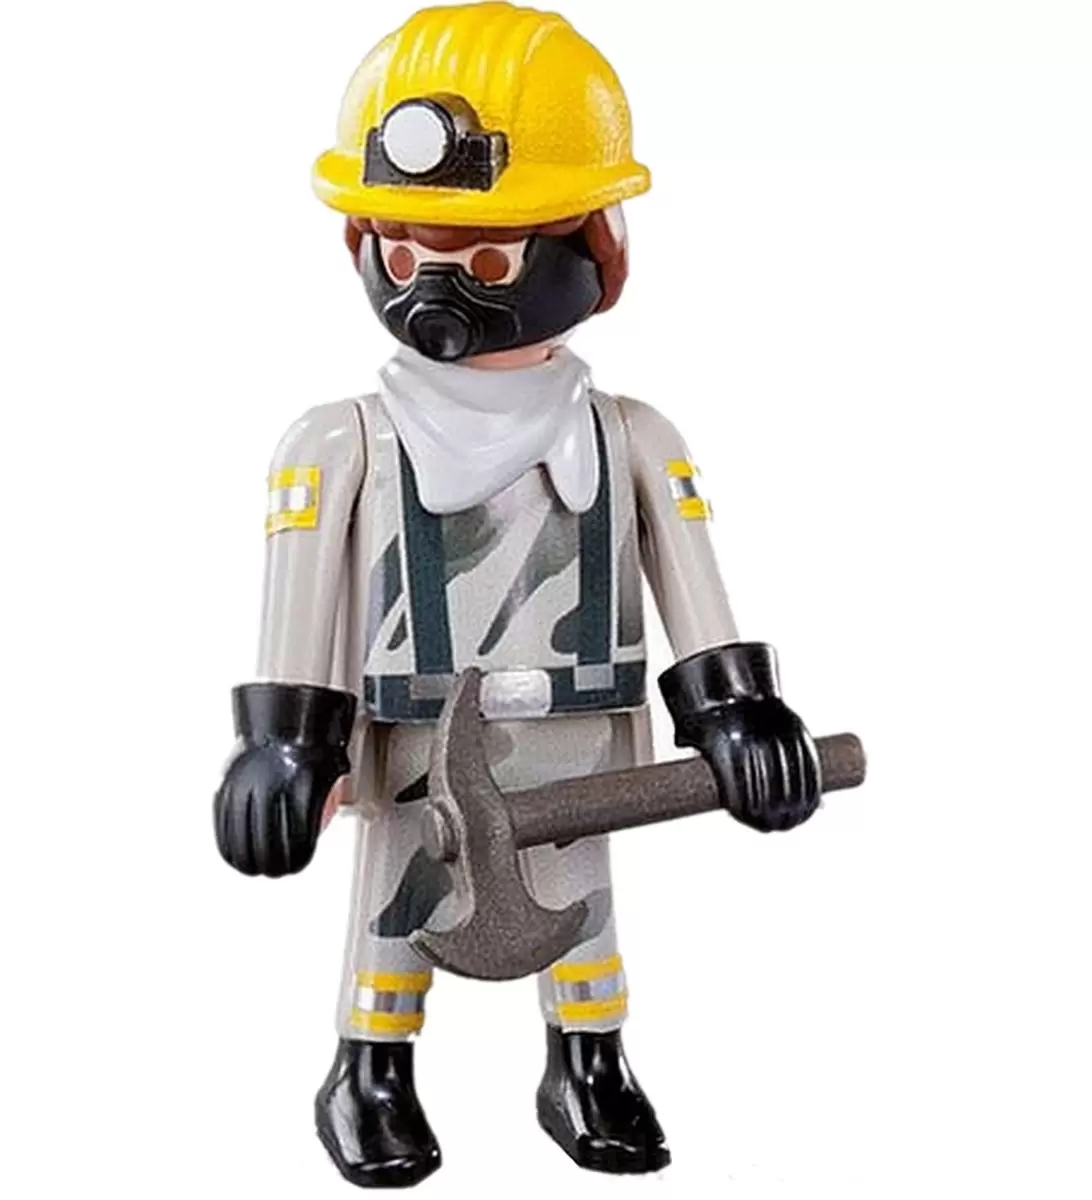 Berg Ijver Schat The miner - Playmobil Figures Series 12 9241